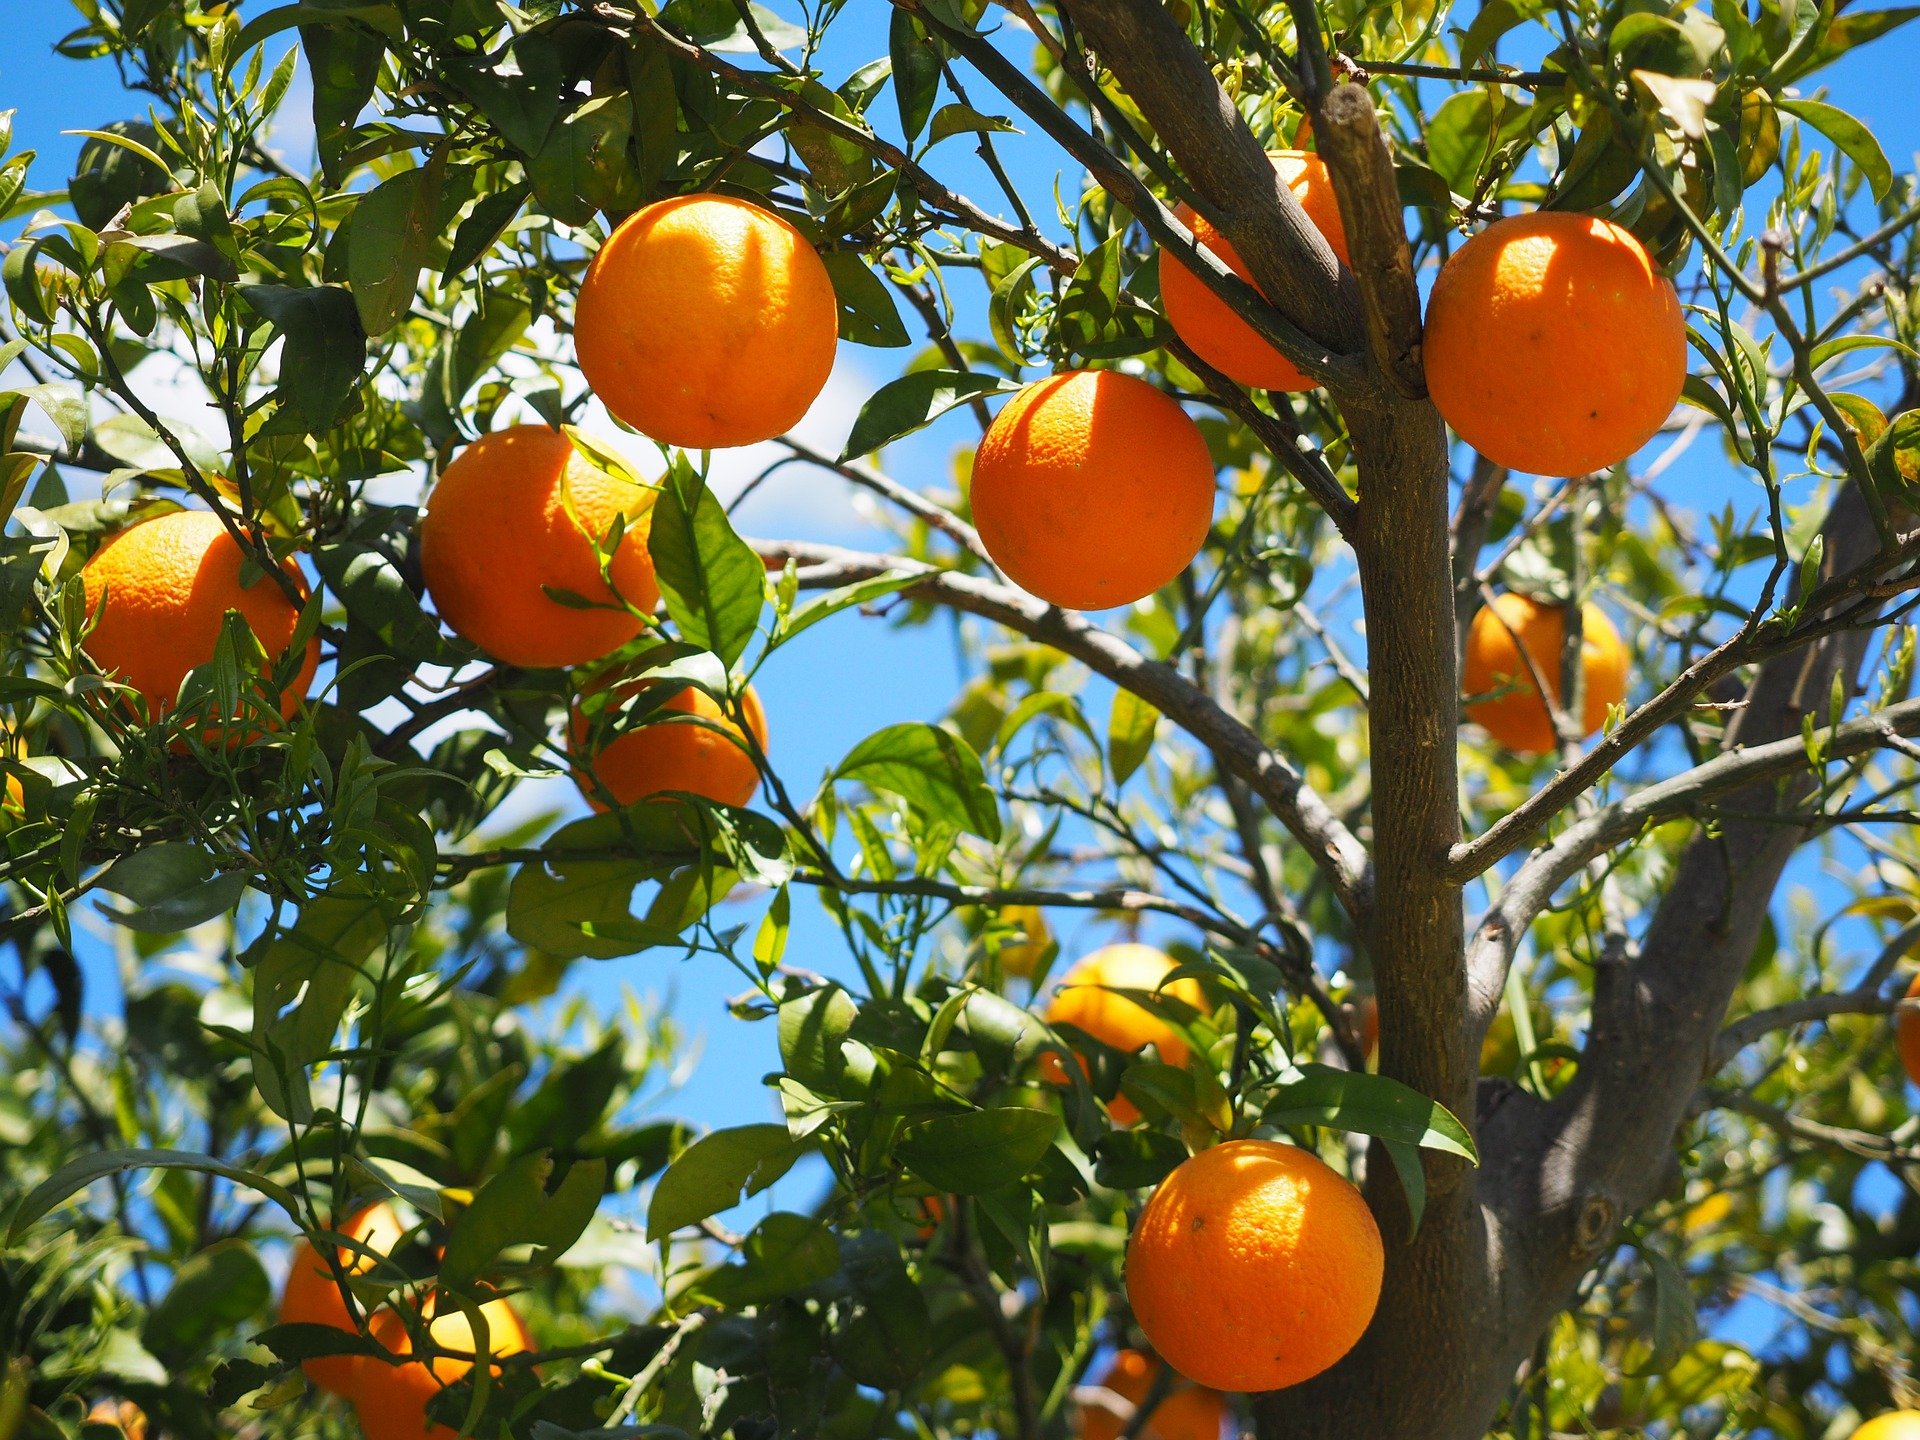 Citros/Cepea: Preços da laranja caem em abril; contratos para 24/25 voltam a se aquecer